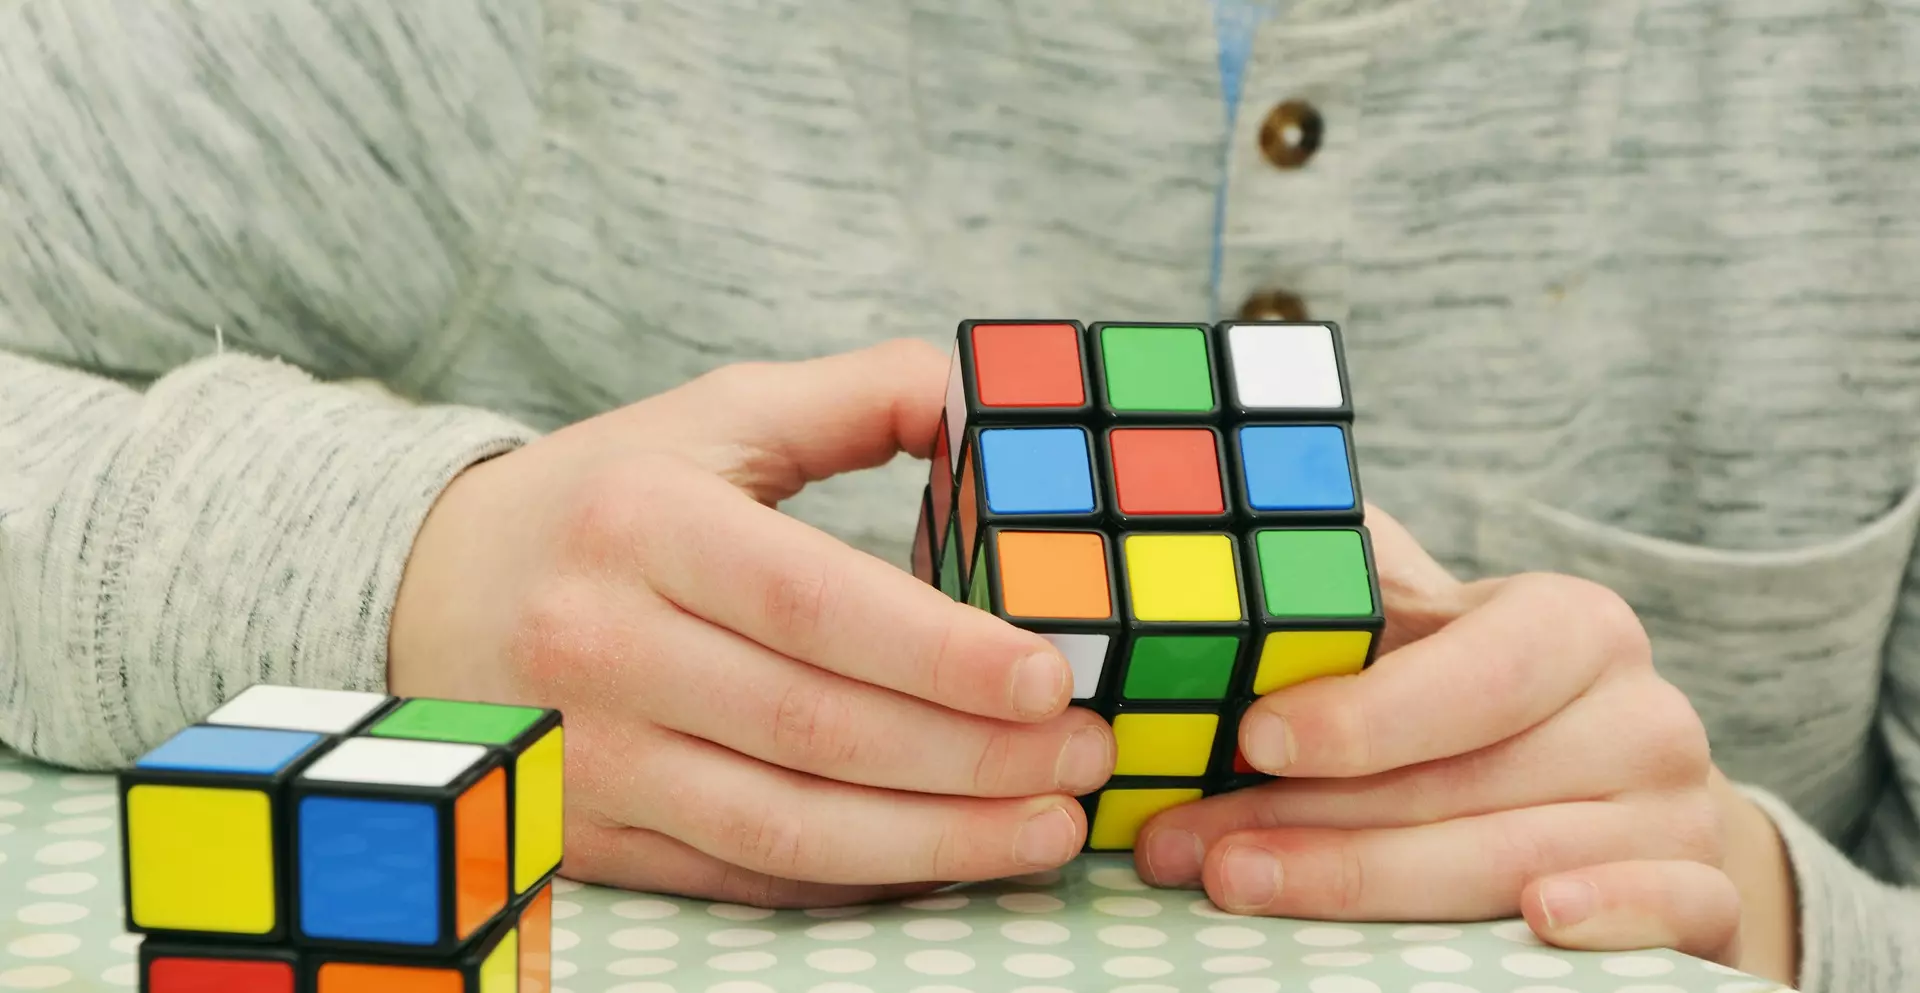 Resolvemos el cubo Rubik gracias a OrCam MyEye 2.0 - OrCam Copy